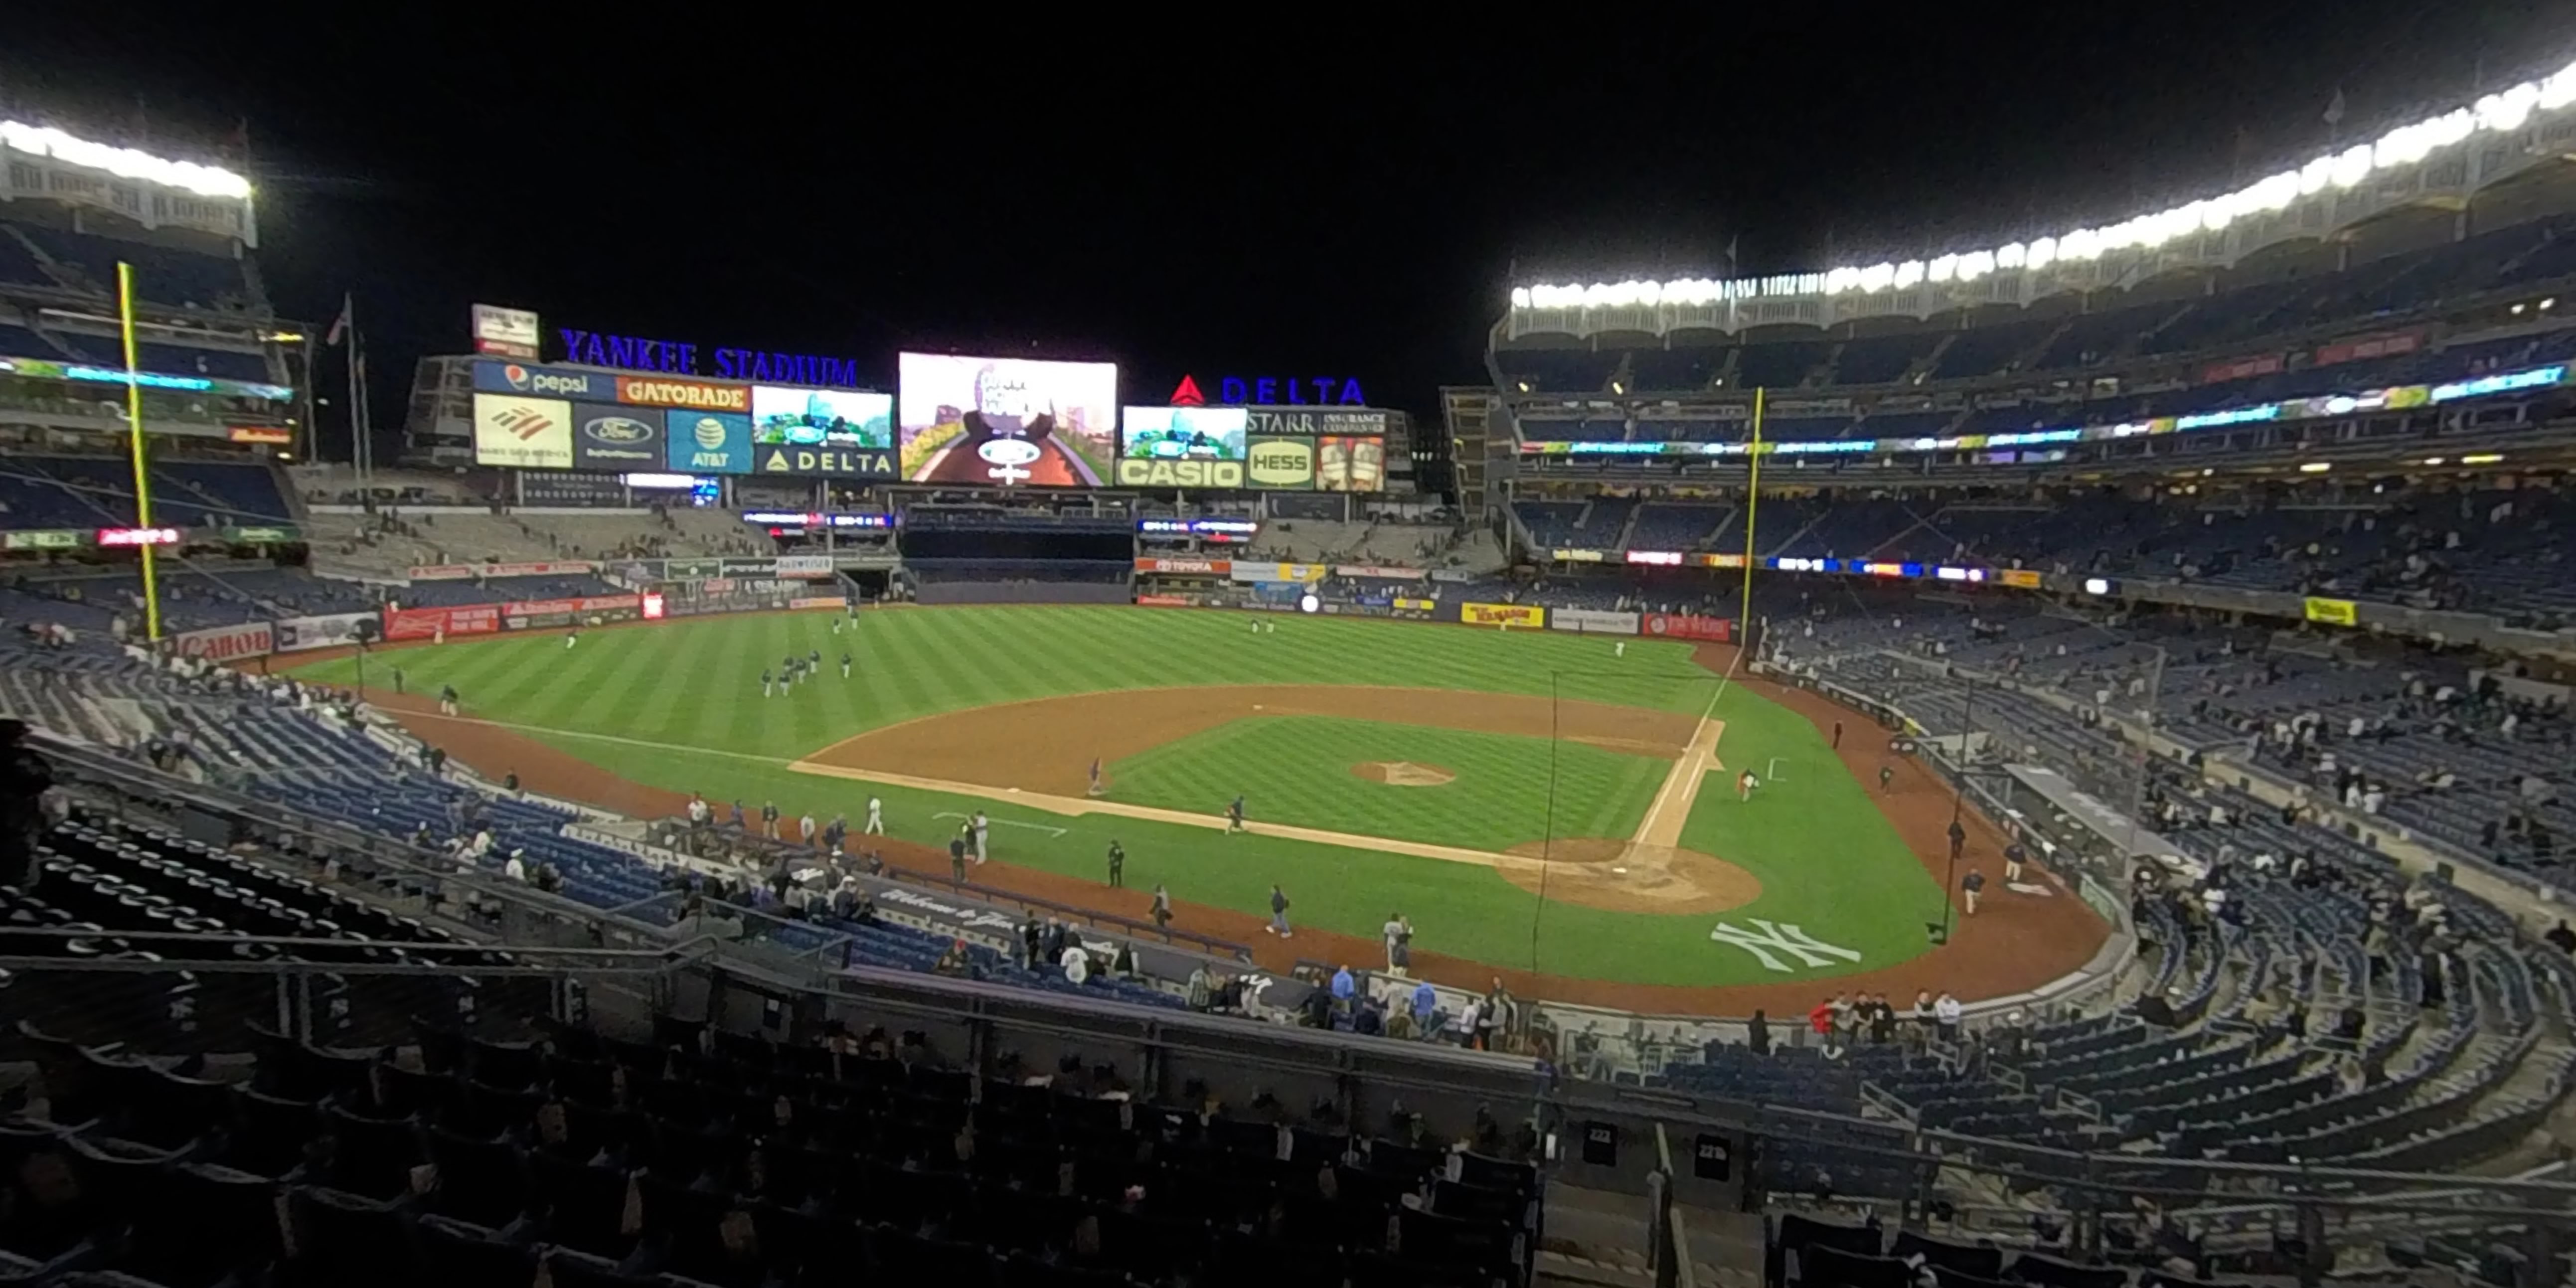 section 221b panoramic seat view  for baseball - yankee stadium